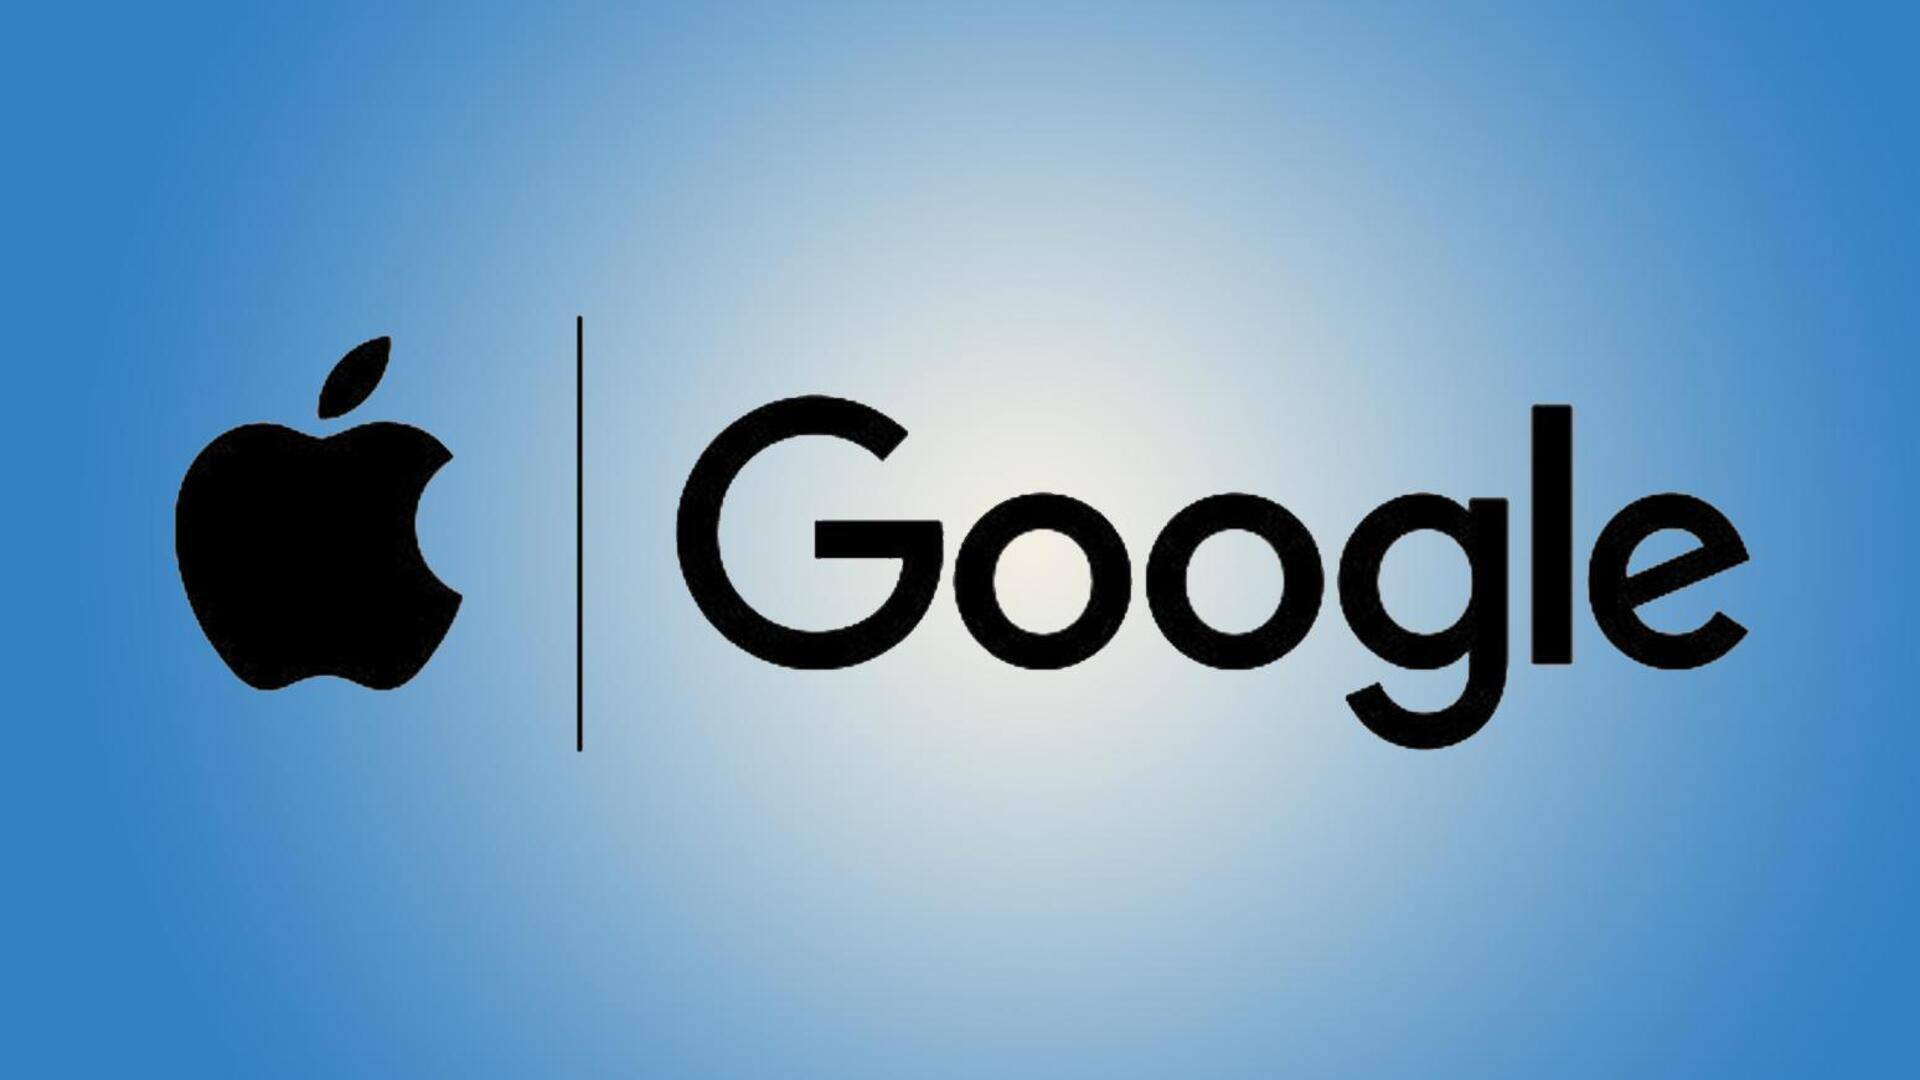 ऐपल और गूगल से पुश नोटिफिकेशन डाटा मांग रहीं सरकारें, करना चाहती हैं यूजर्स की जासूसी